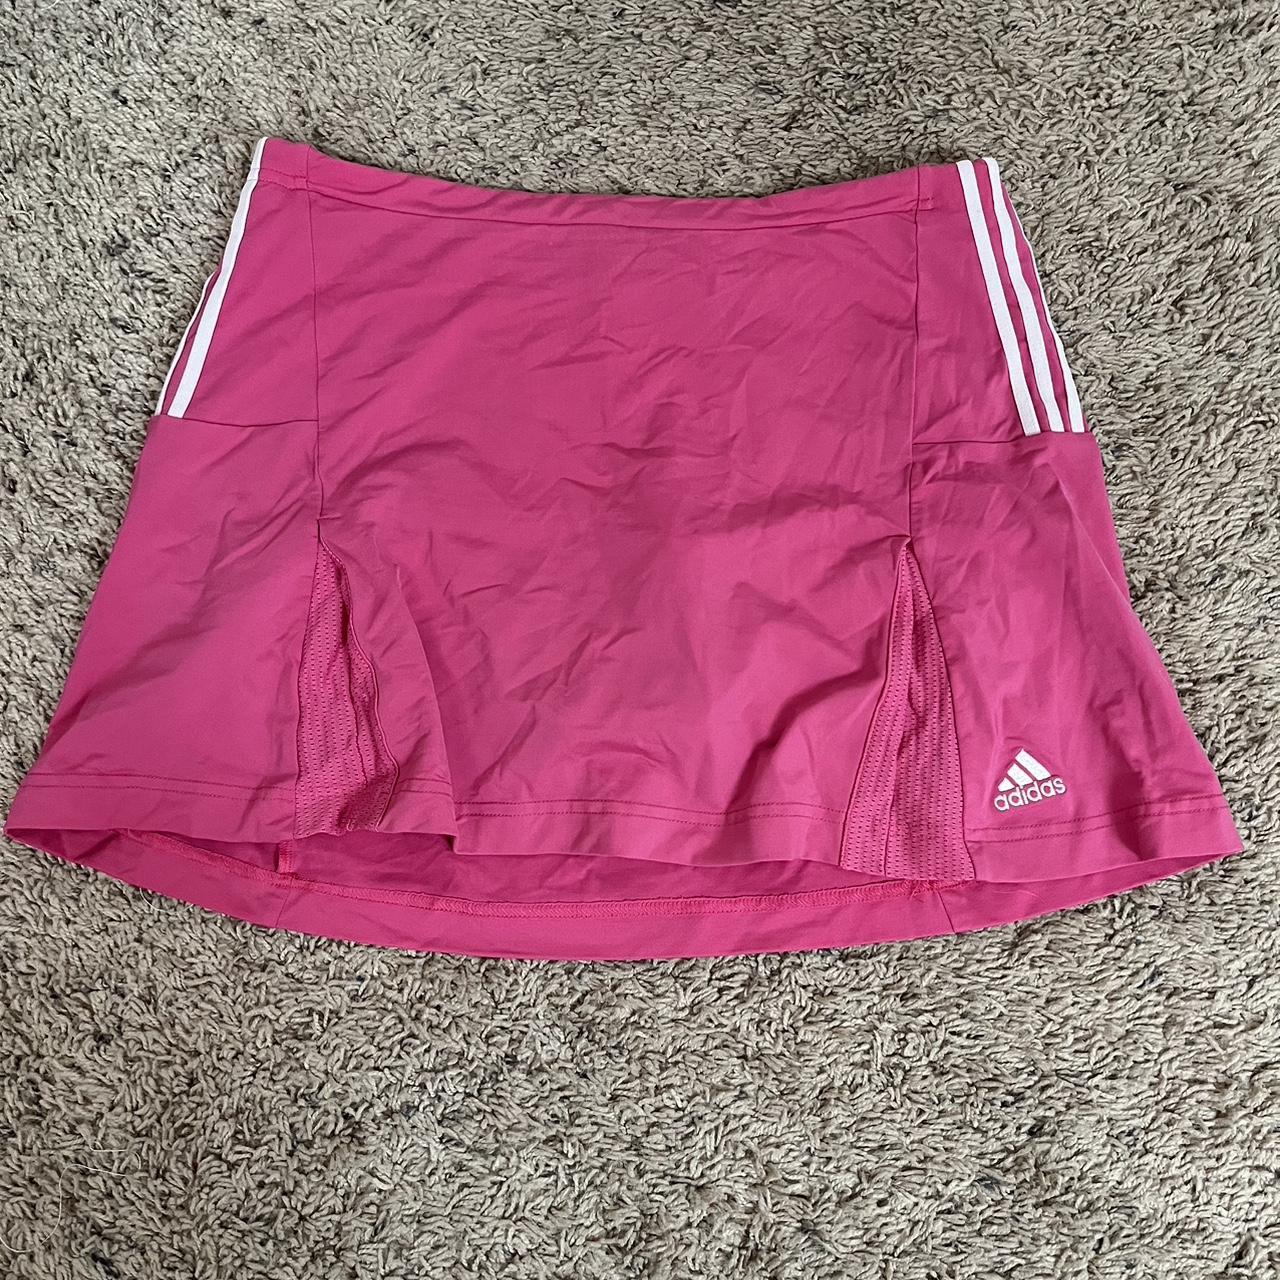 adidas pink running/tennis skirt good condition,... - Depop